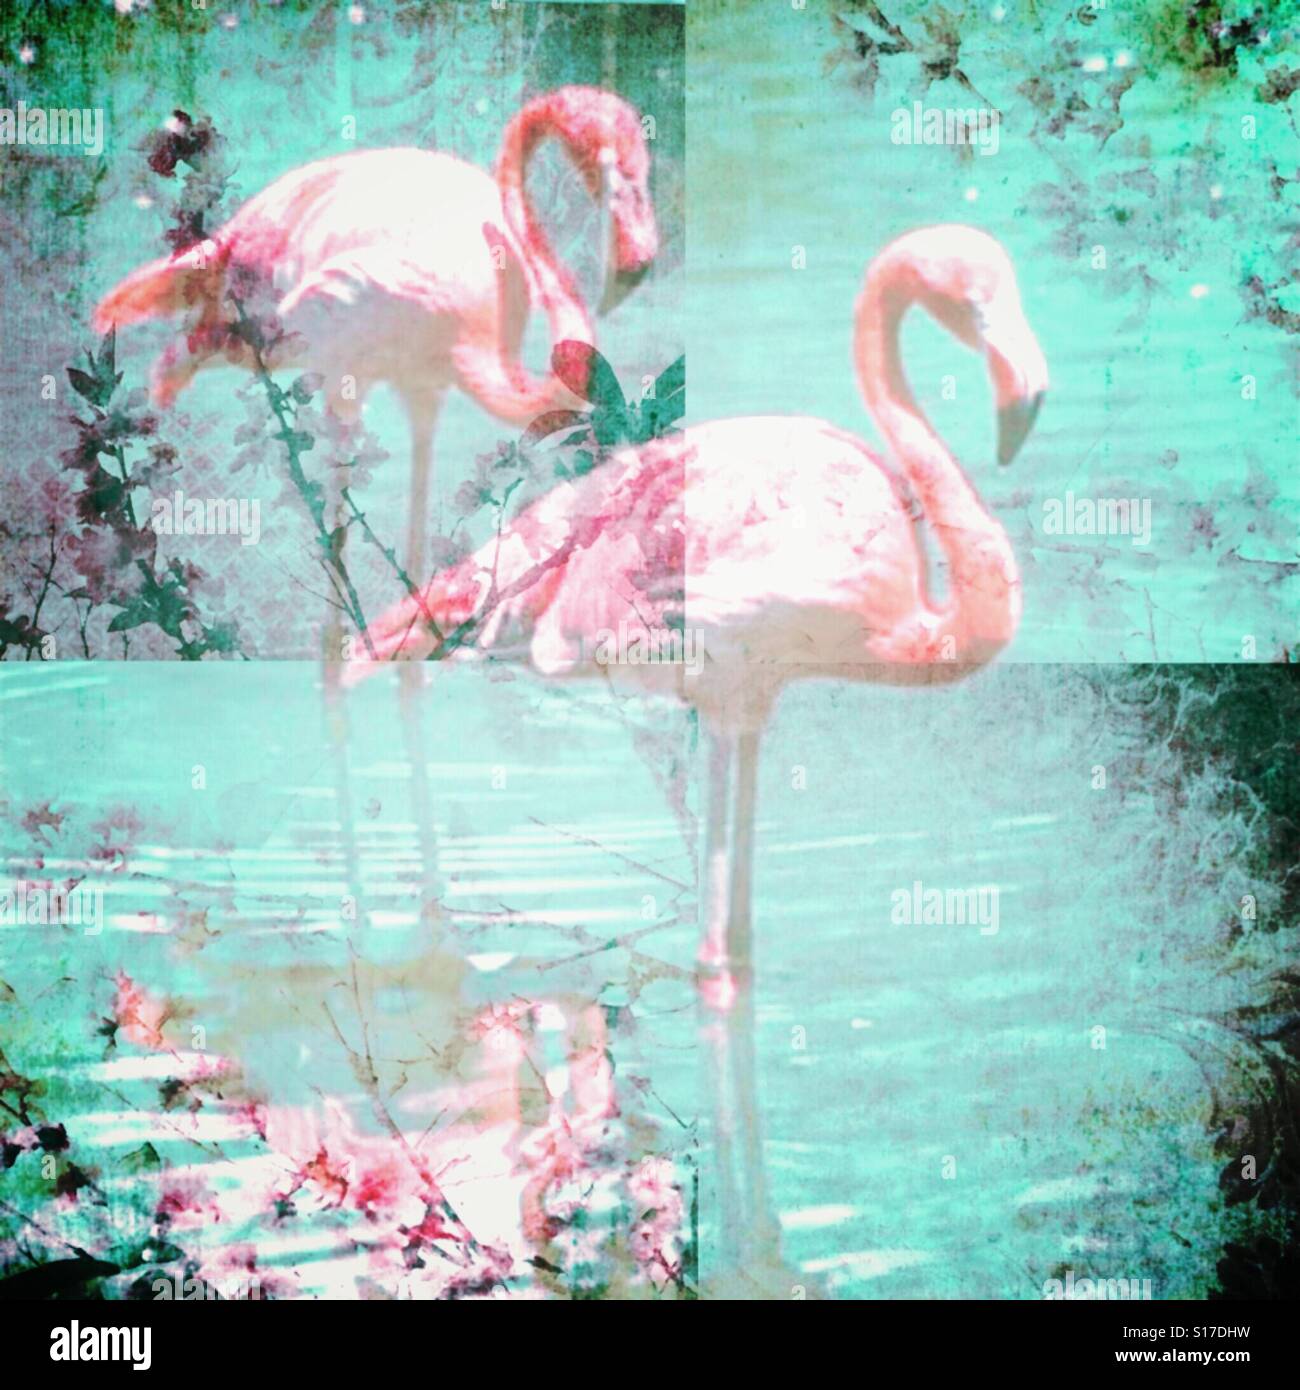 Flamingo Fantasy, iPhone photo collage, stratificati gli effetti fotografici, vigne, flamingo coppia, stile Boho Foto Stock